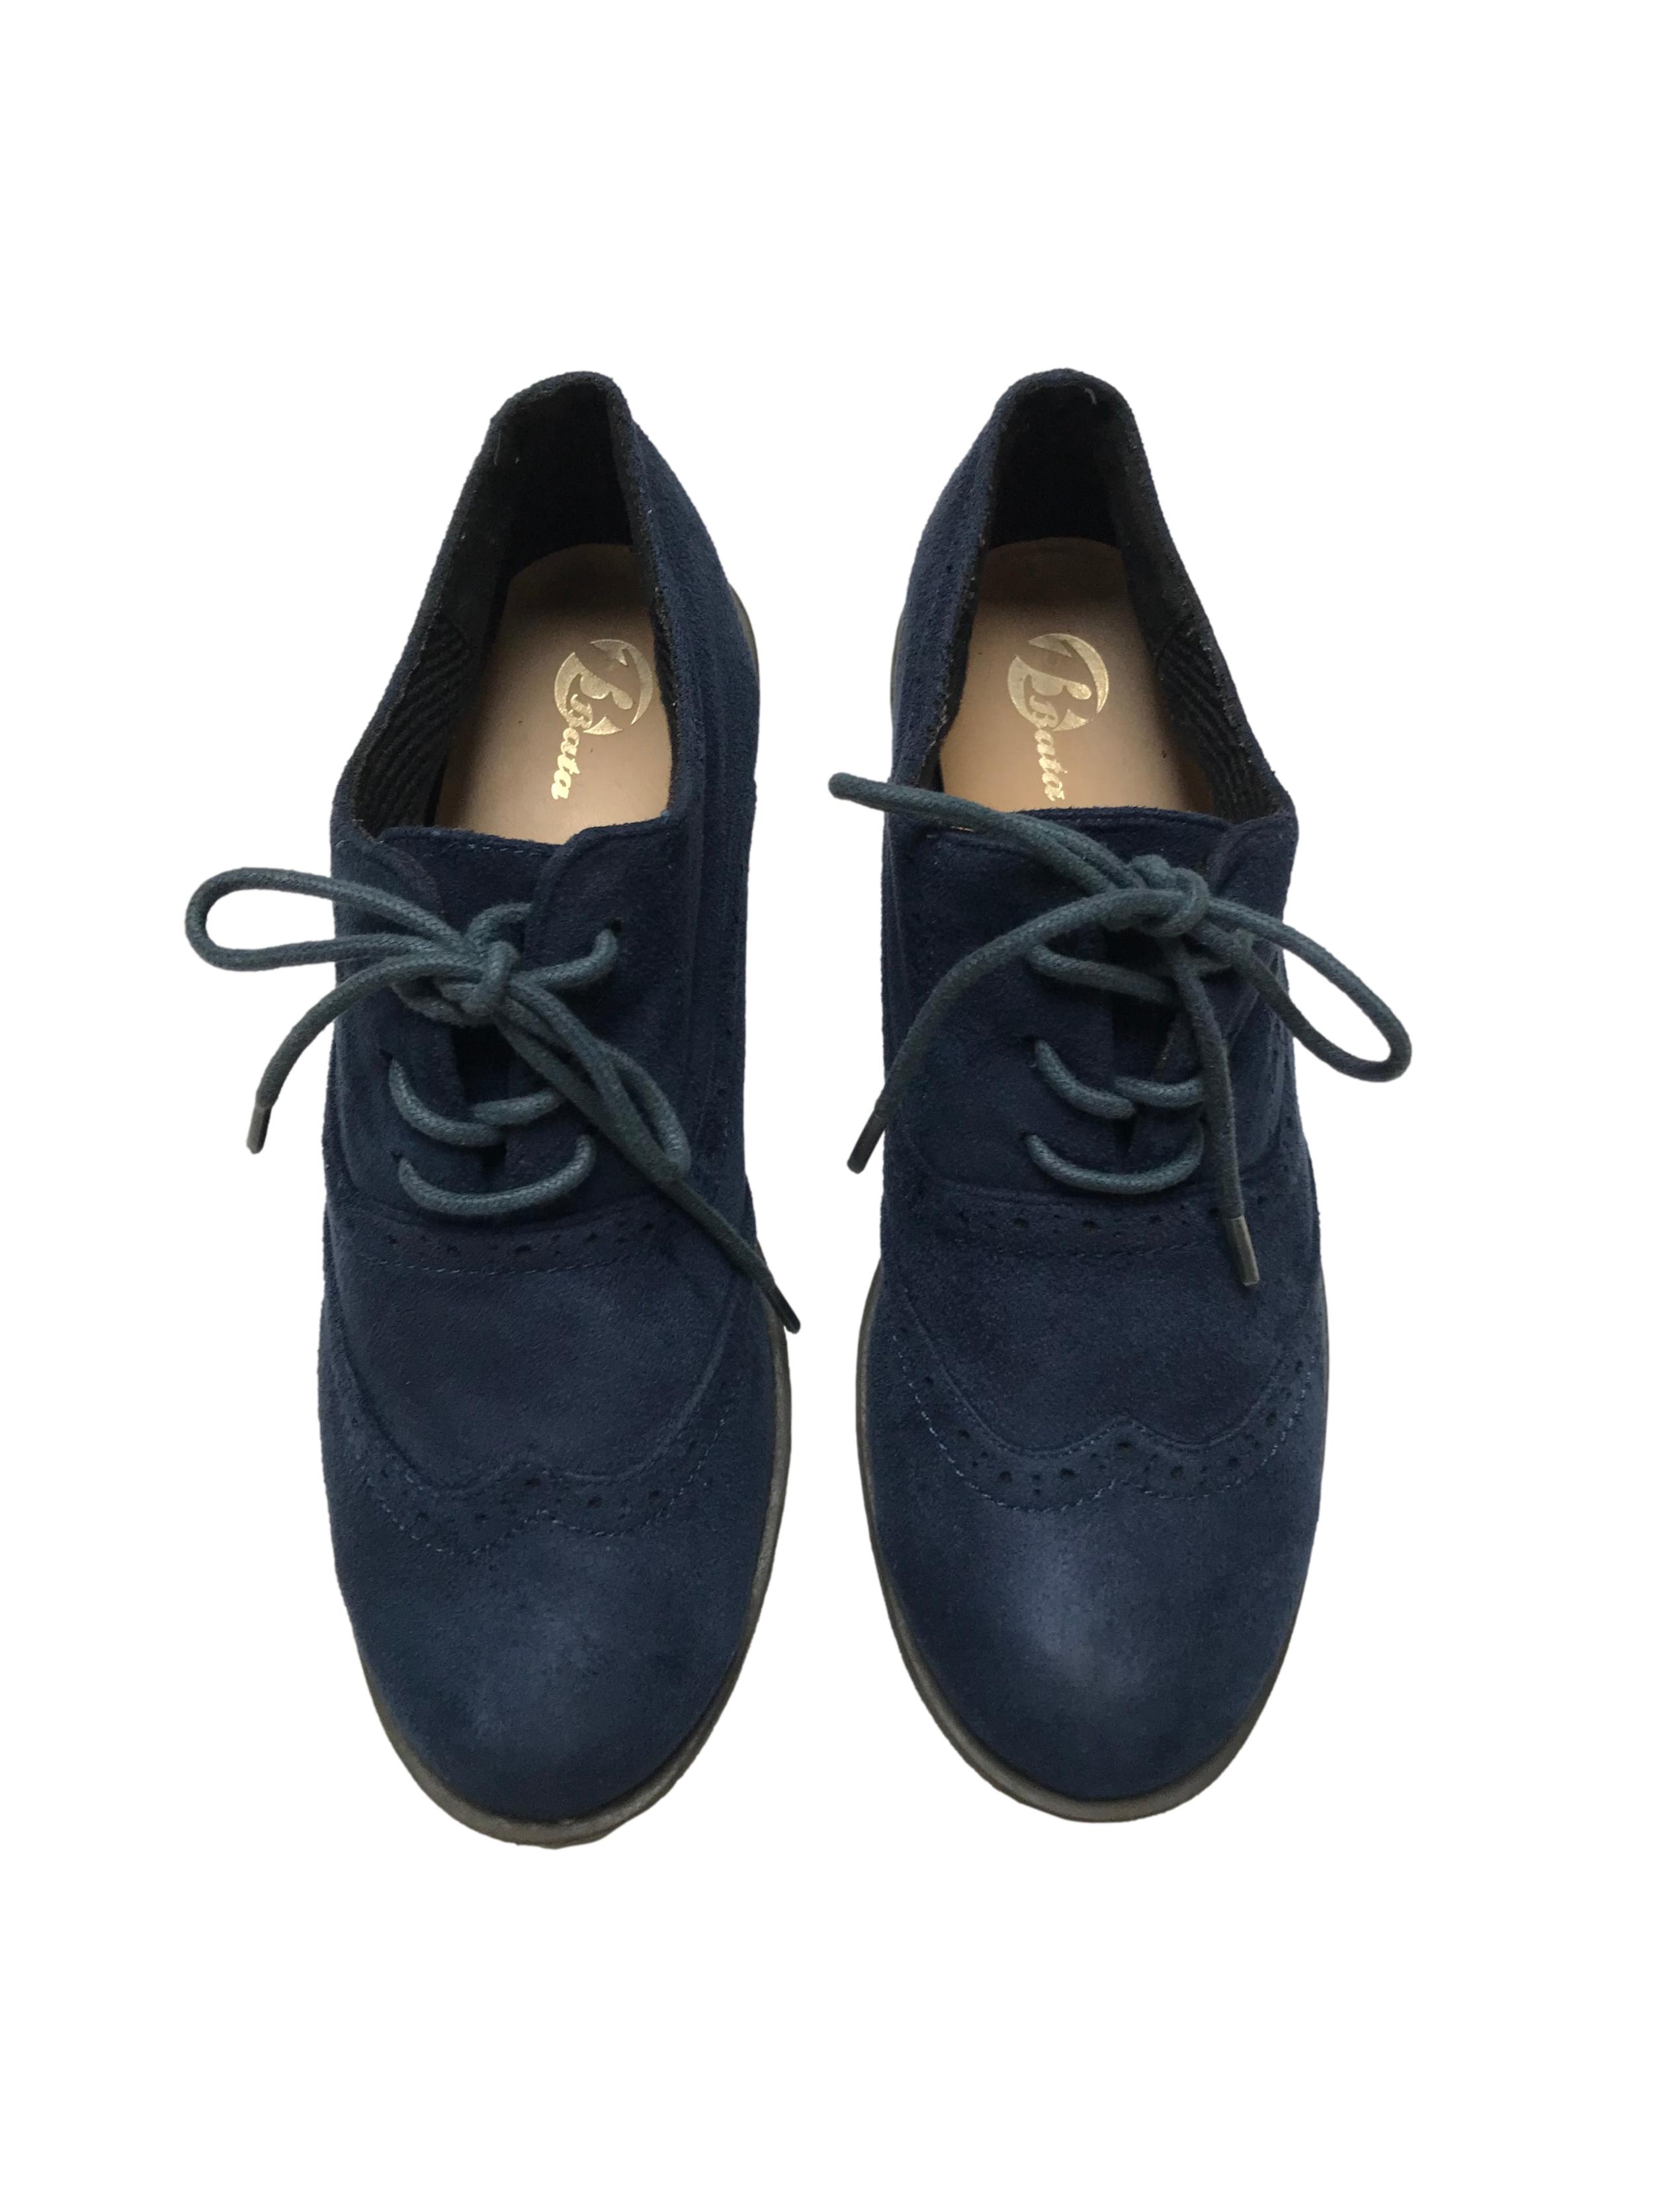 Zapatos Bata estilo Oxford de textil tipo piel de durazno y pasadores. Estado 9/10. 